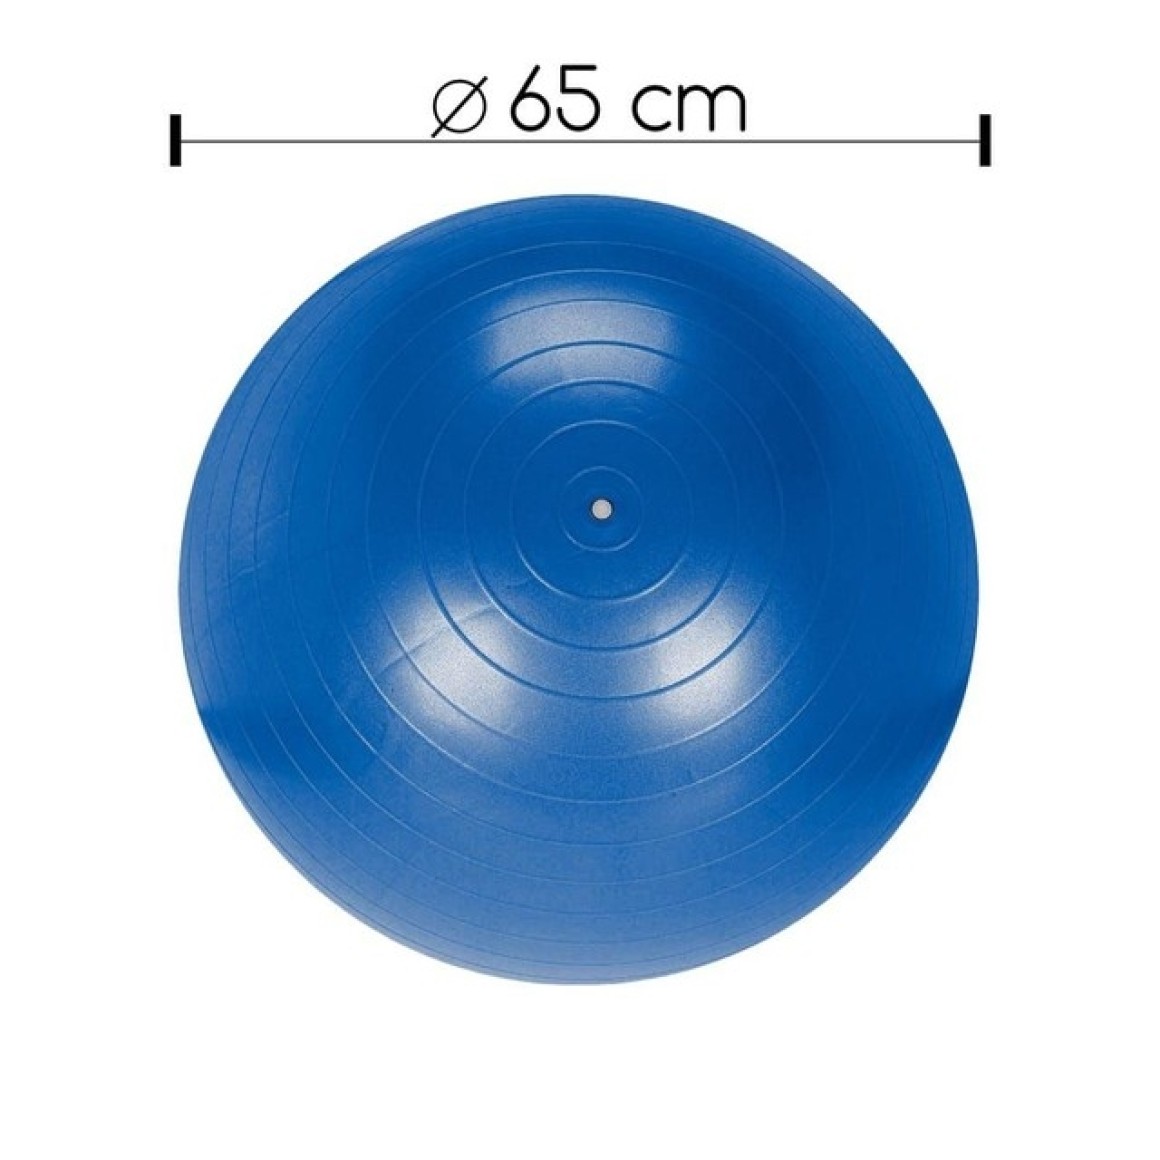 Bola inflável para exercícios / pilates 65cm fit-16